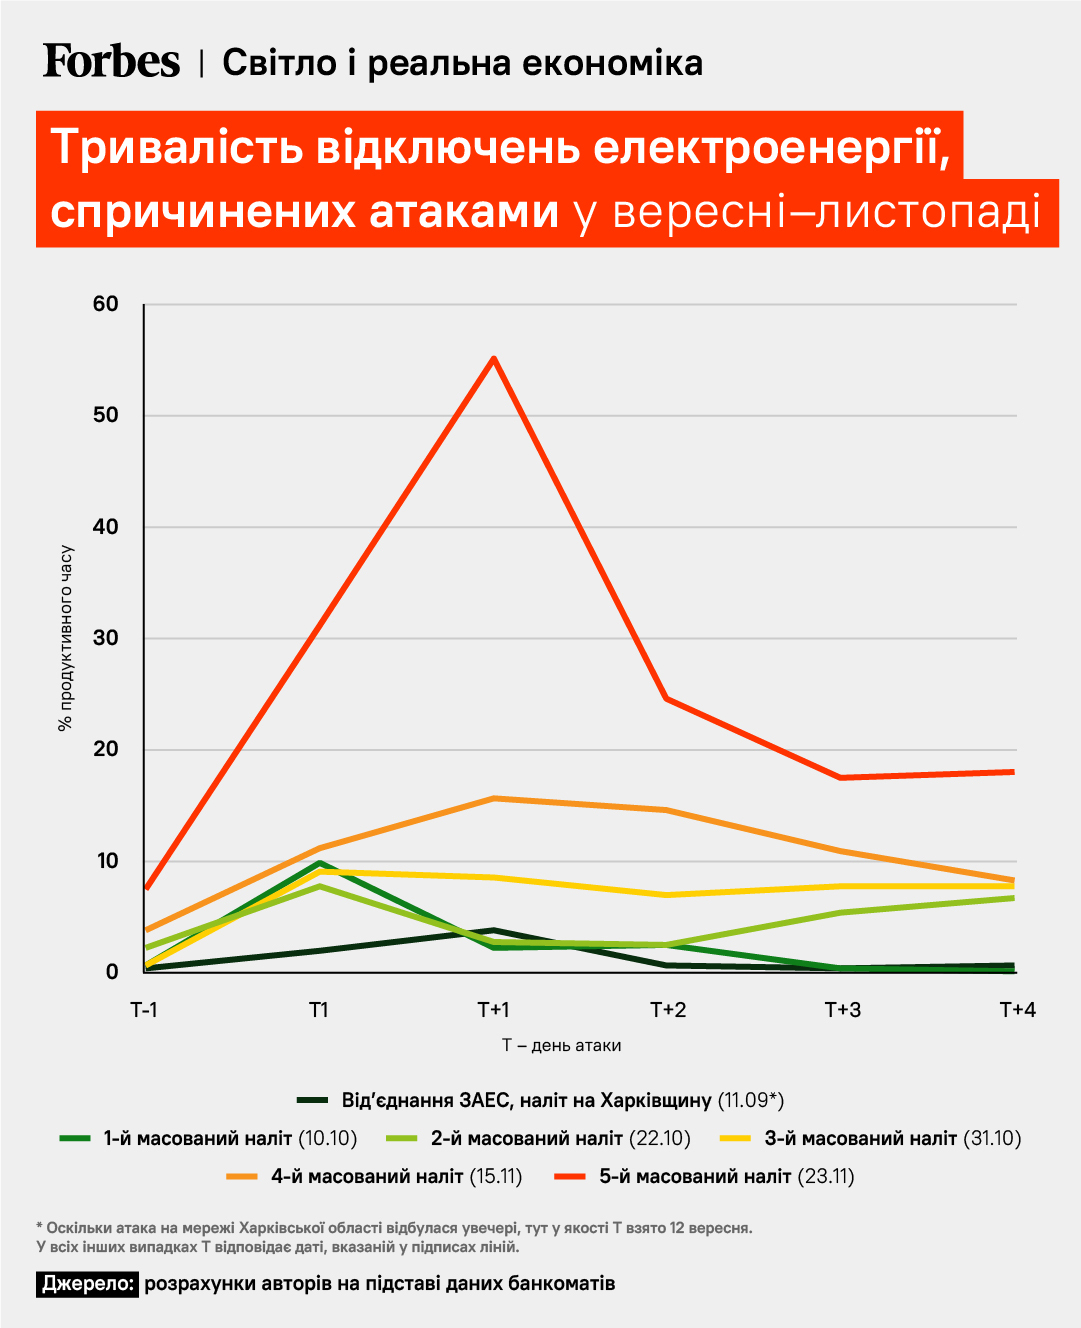 Російські ракети “забрали” 12% робочого часу. Змістовна оцінка економічних втрат через атаки на енергетику /Фото 1